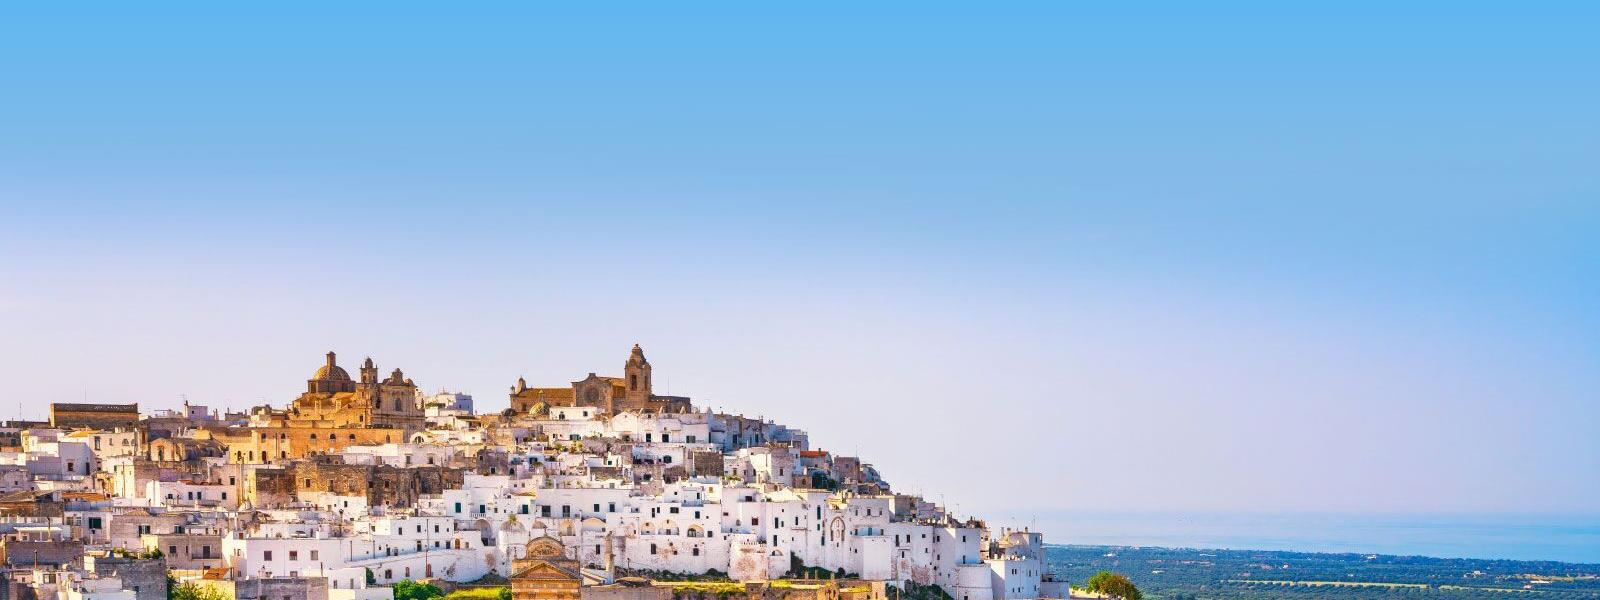 Ferienwohnungen und Ferienhäuser in Apulien - e-domizil